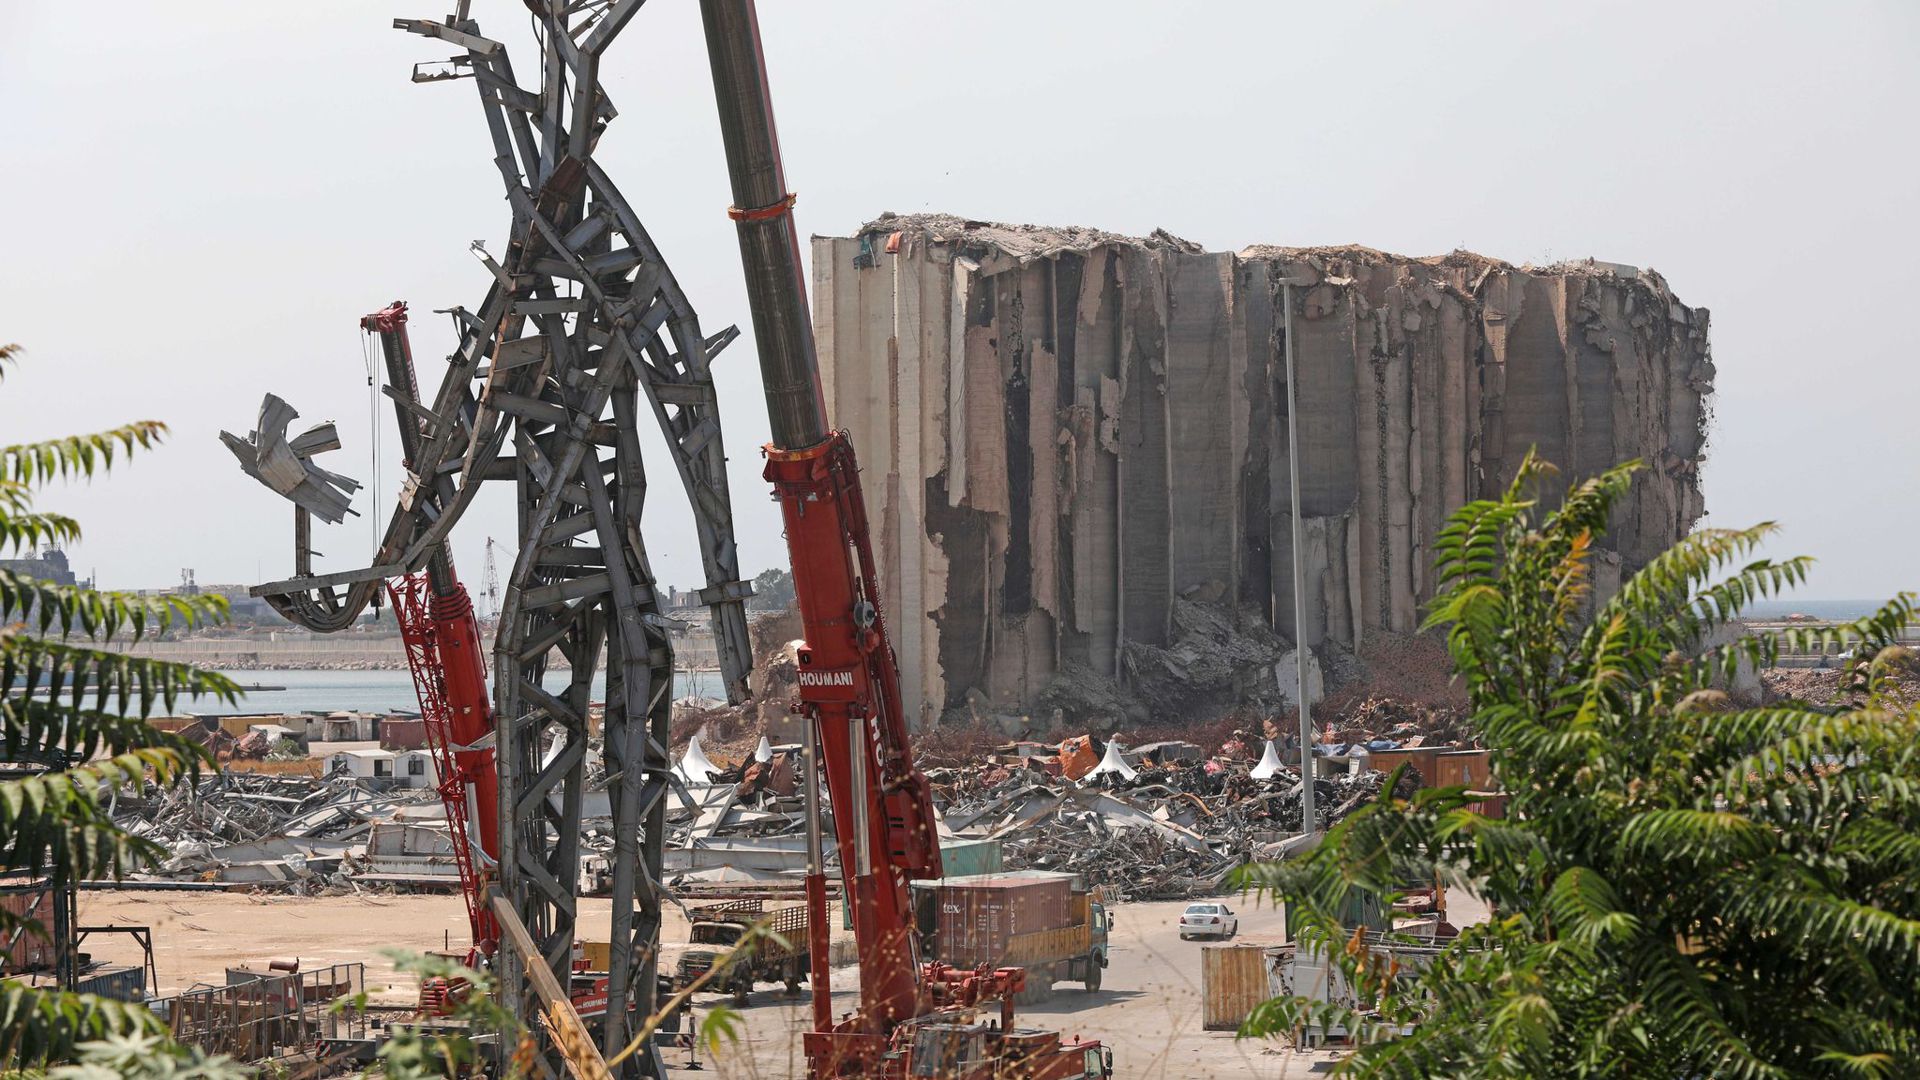 Die Skulptur „The Giant“ (Der Riese) wurde aus Trümmern gefertigt - sie steht im Hafen in der Nähe des zerstörten Getreidesilos.